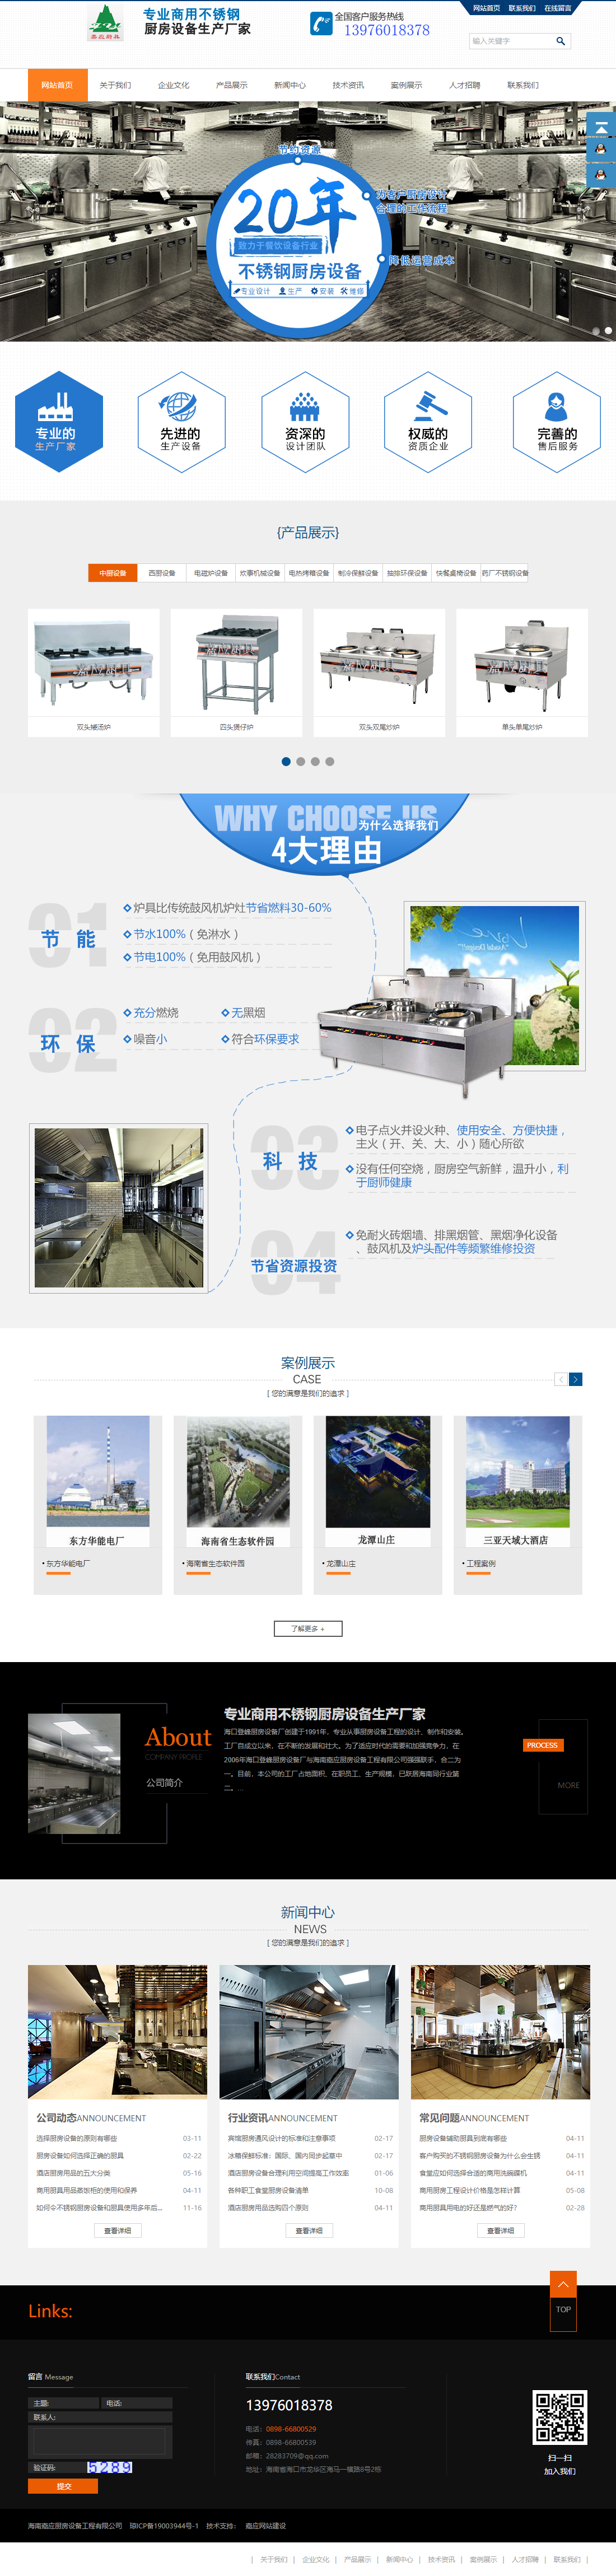 海南嘉应厨房设备工程有限公司网站案例